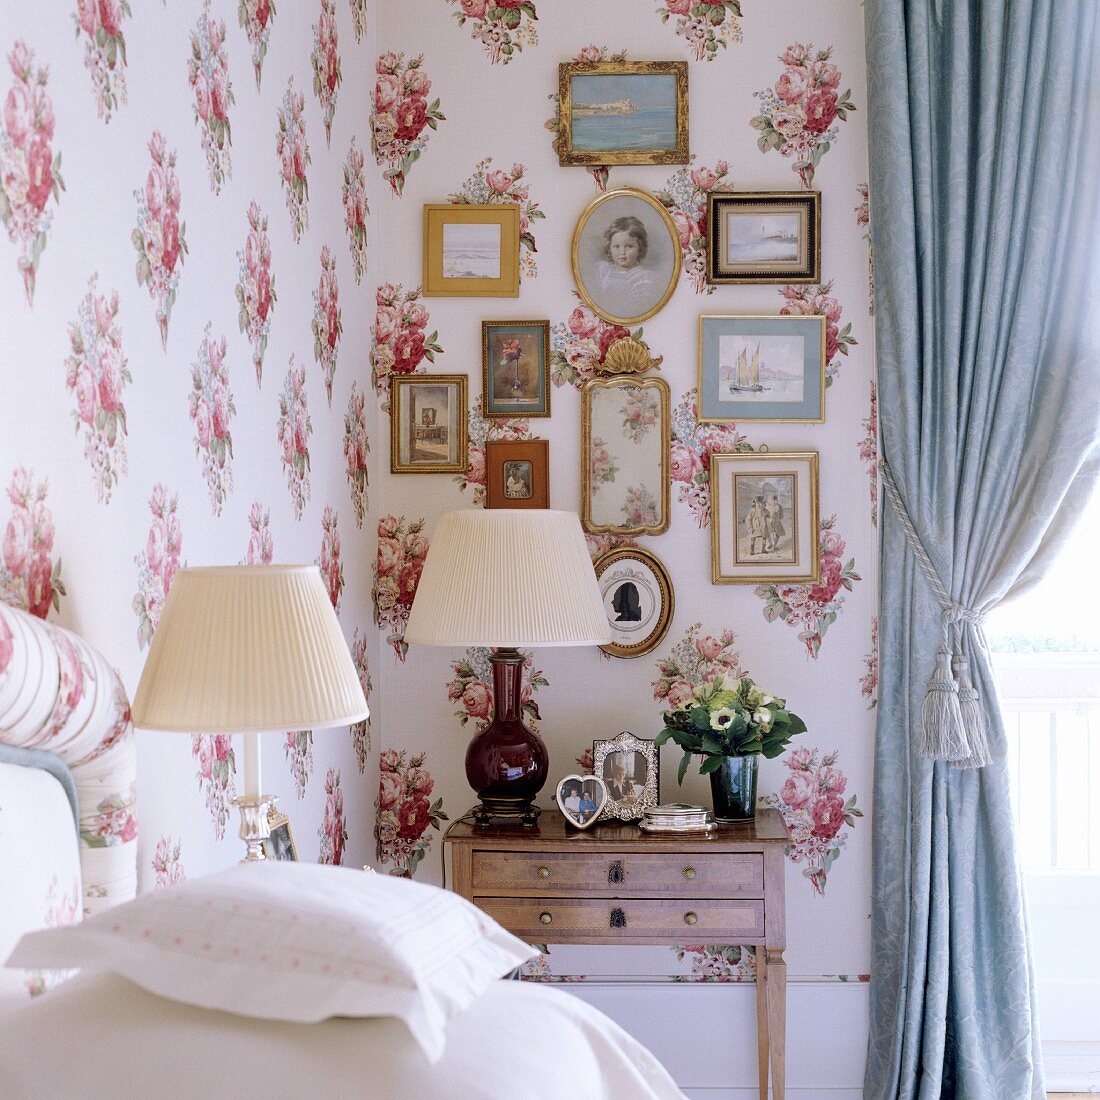 Schlafzimmerecke mit Tischleuchten und Bildersammlung vor stoffbezogener Wand mit Blumenmuster